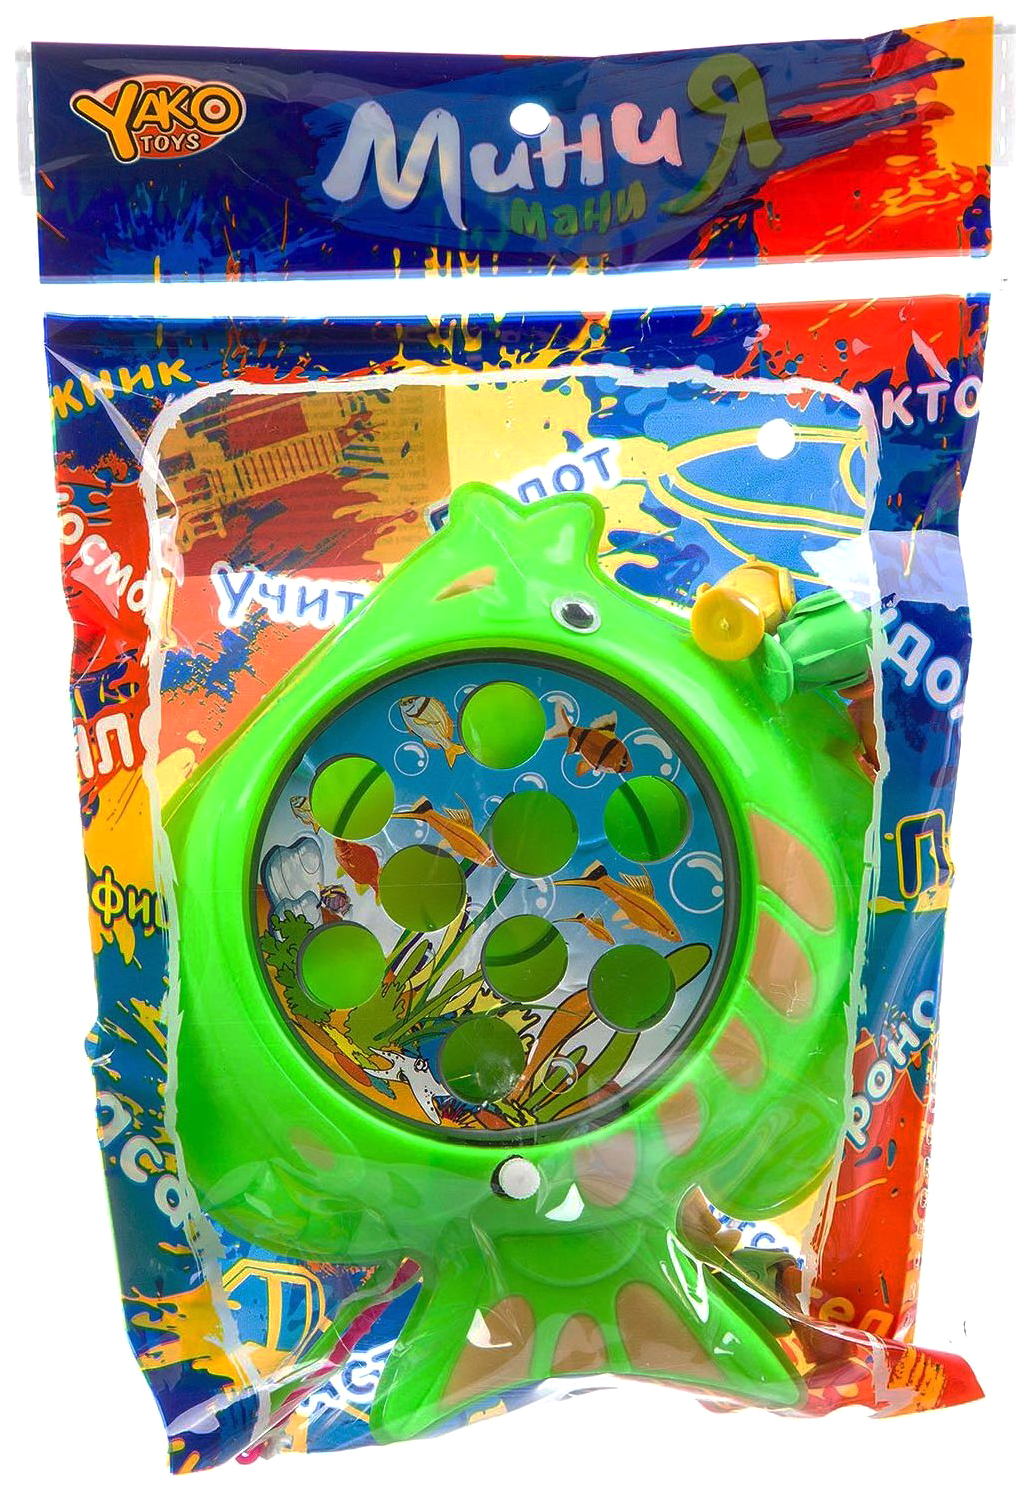 Набор игровой рыбалка Yako Toys с 2 удочками рыбка серия МиниМаниЯ арт.M7627.